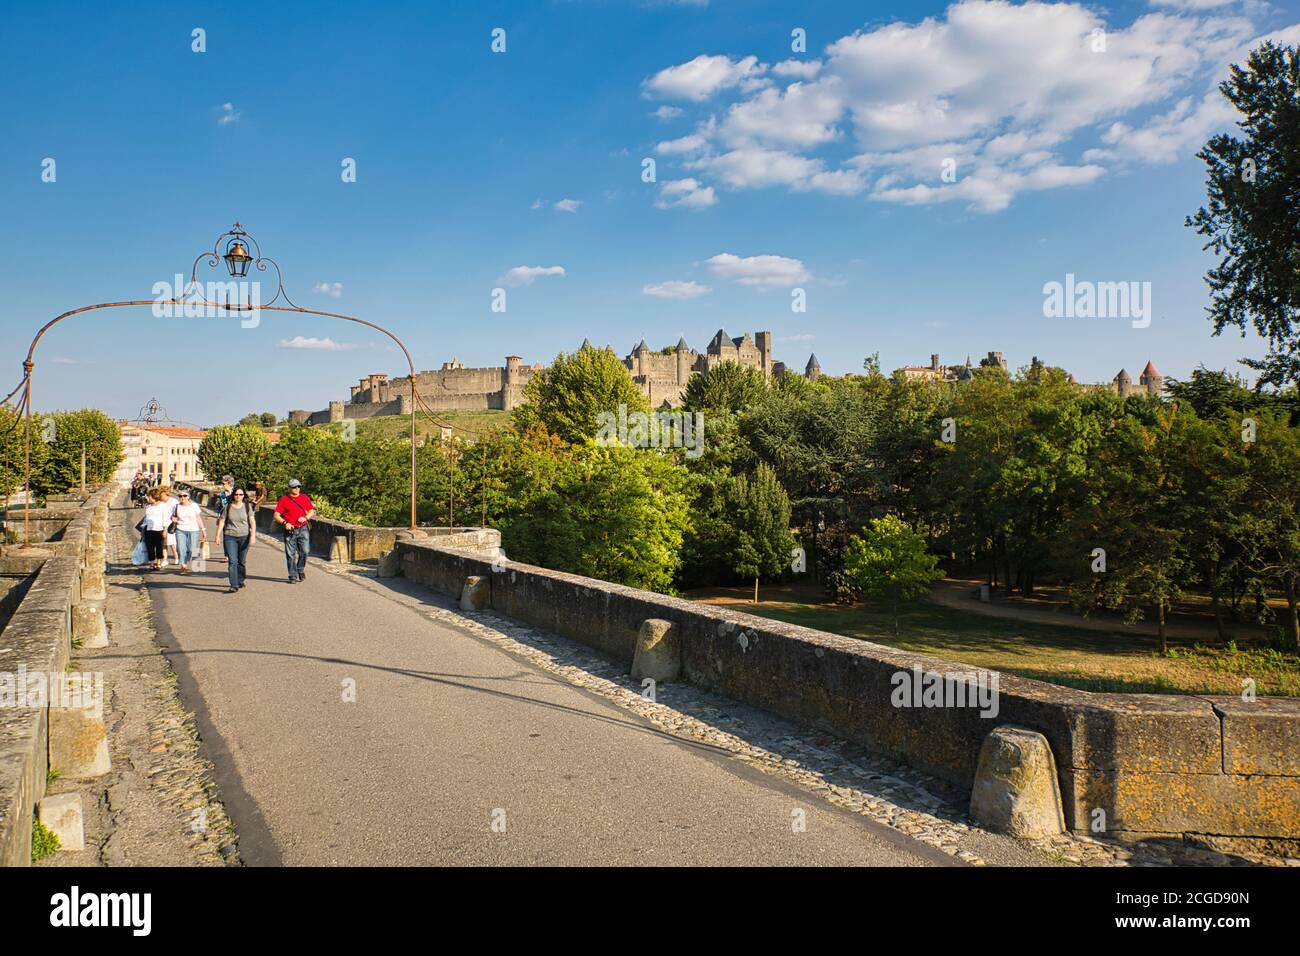 Vista a distanza del castello e merli a la Cité, Carcassonne, Languedoc-Roussillon, Francia, con persone che camminano in primo piano Foto Stock